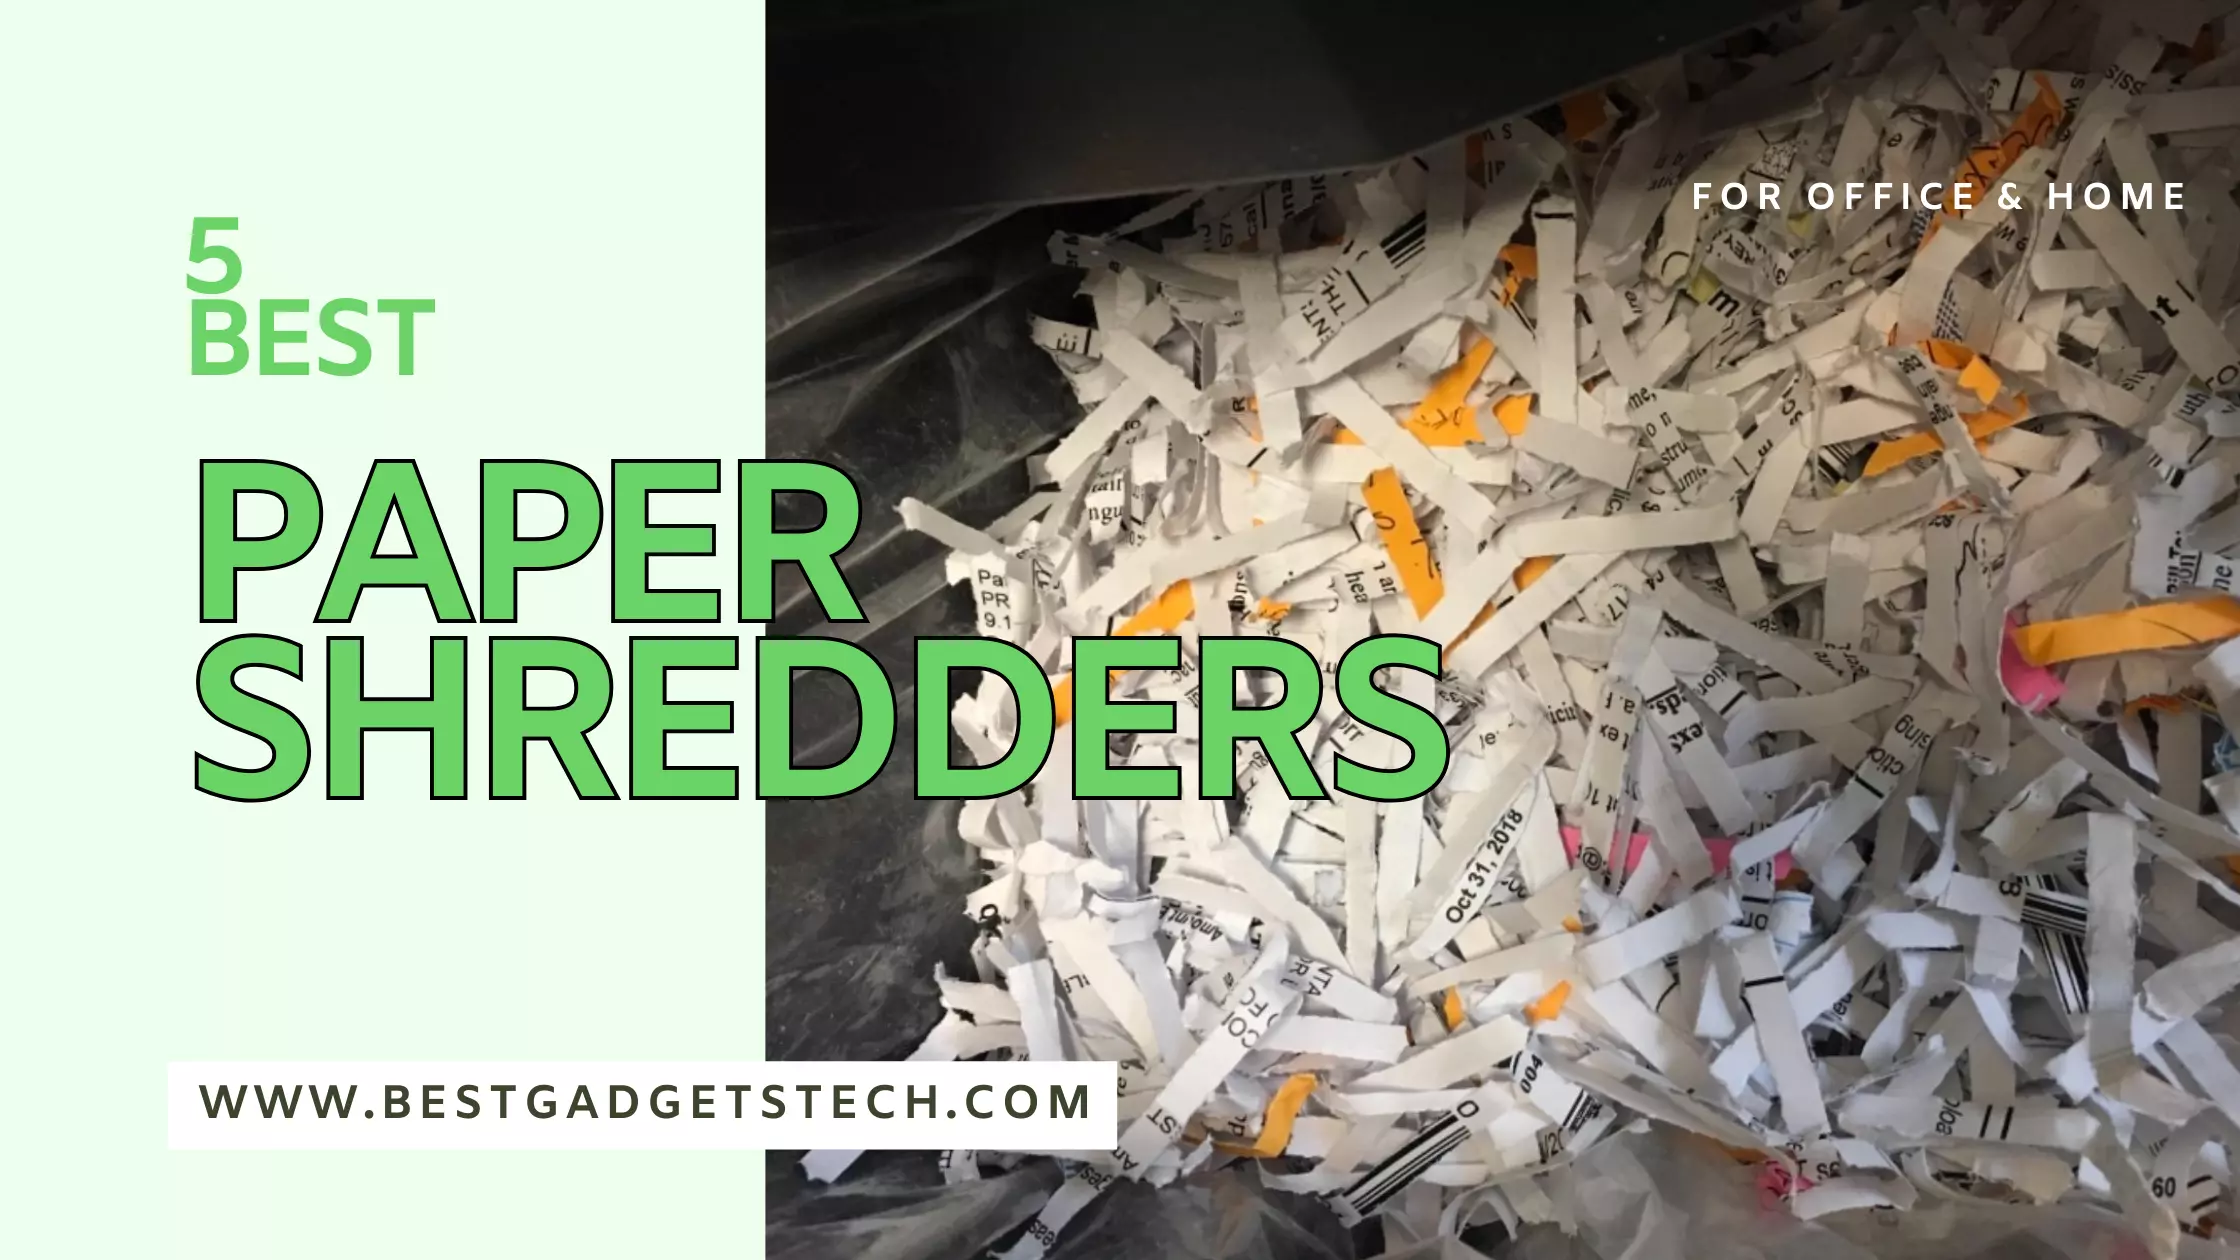 Paper Shredders